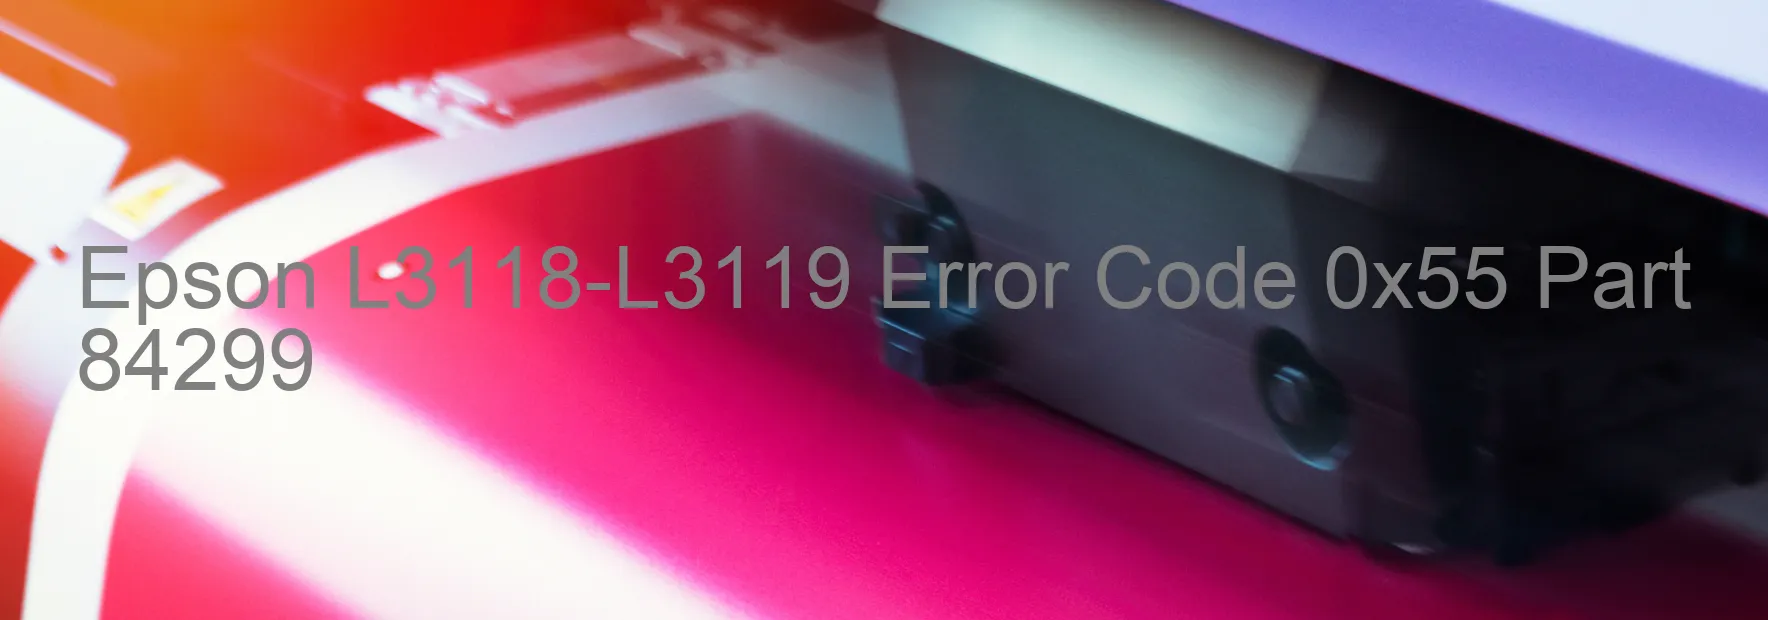 Epson L3118-L3119 Error Code 0x55 Part 84299